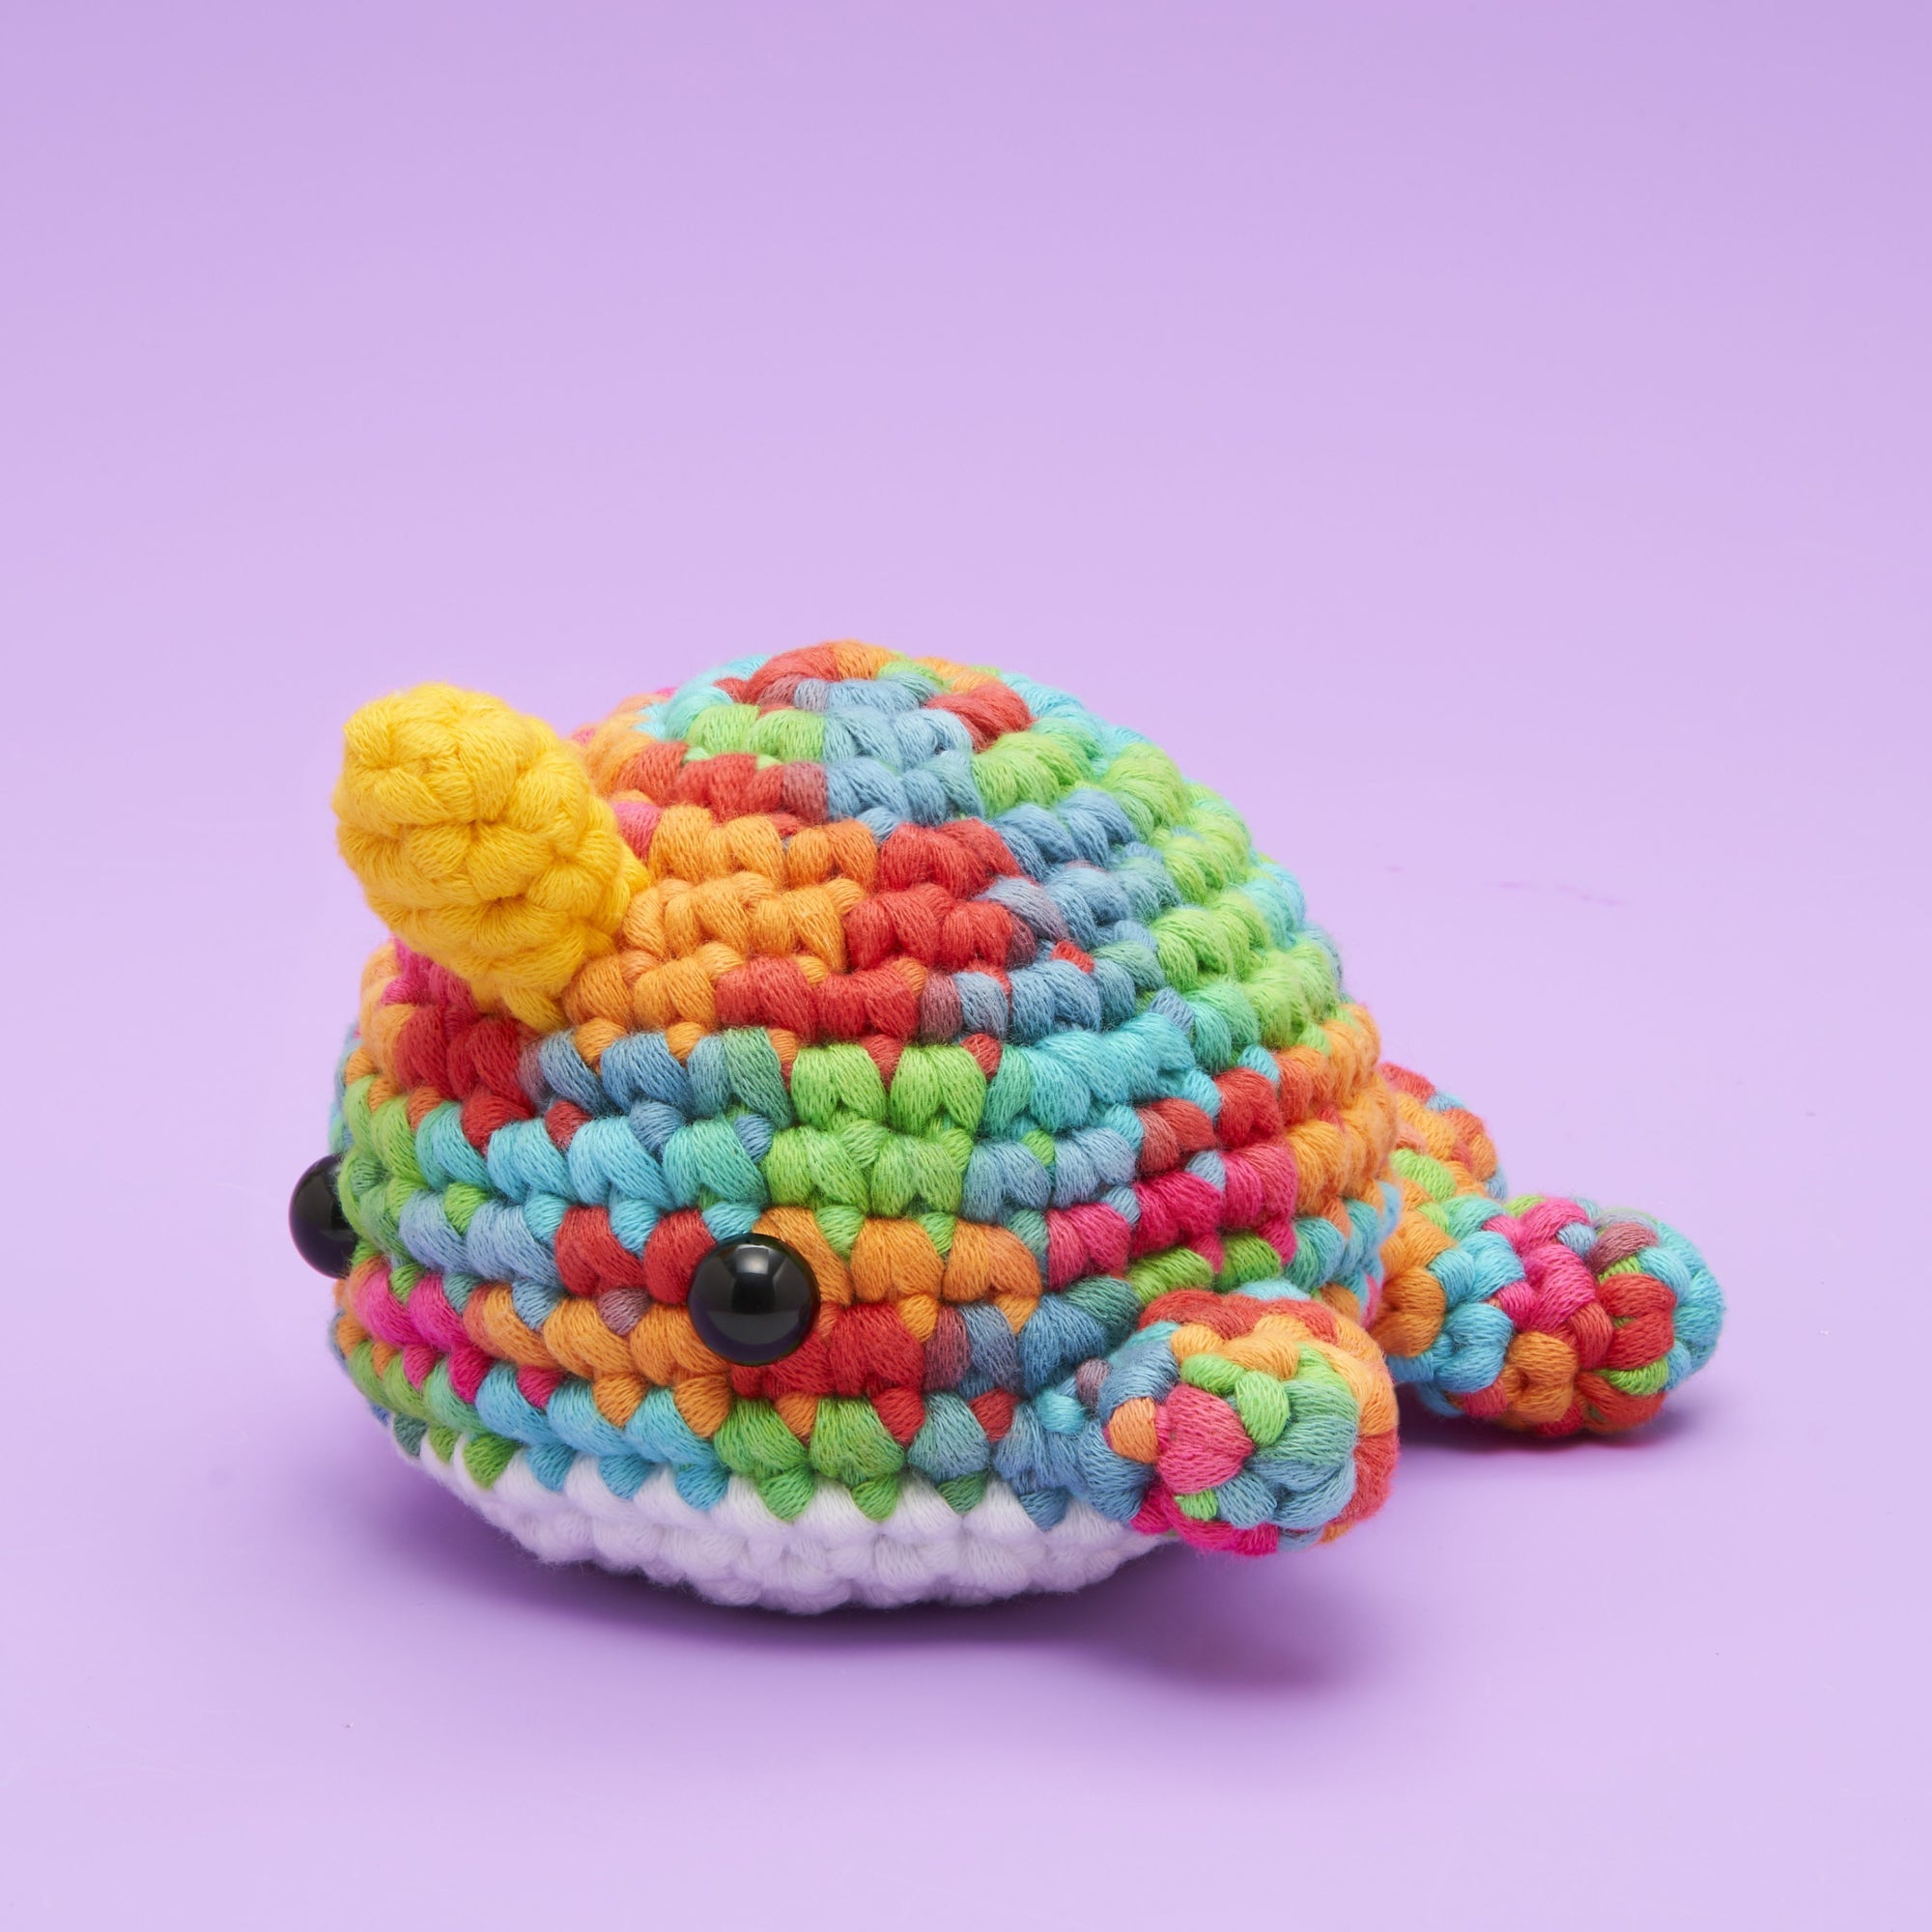  TEHAUX 2 Rolls Crochet Yarn for Beginners Rainbow Yarn